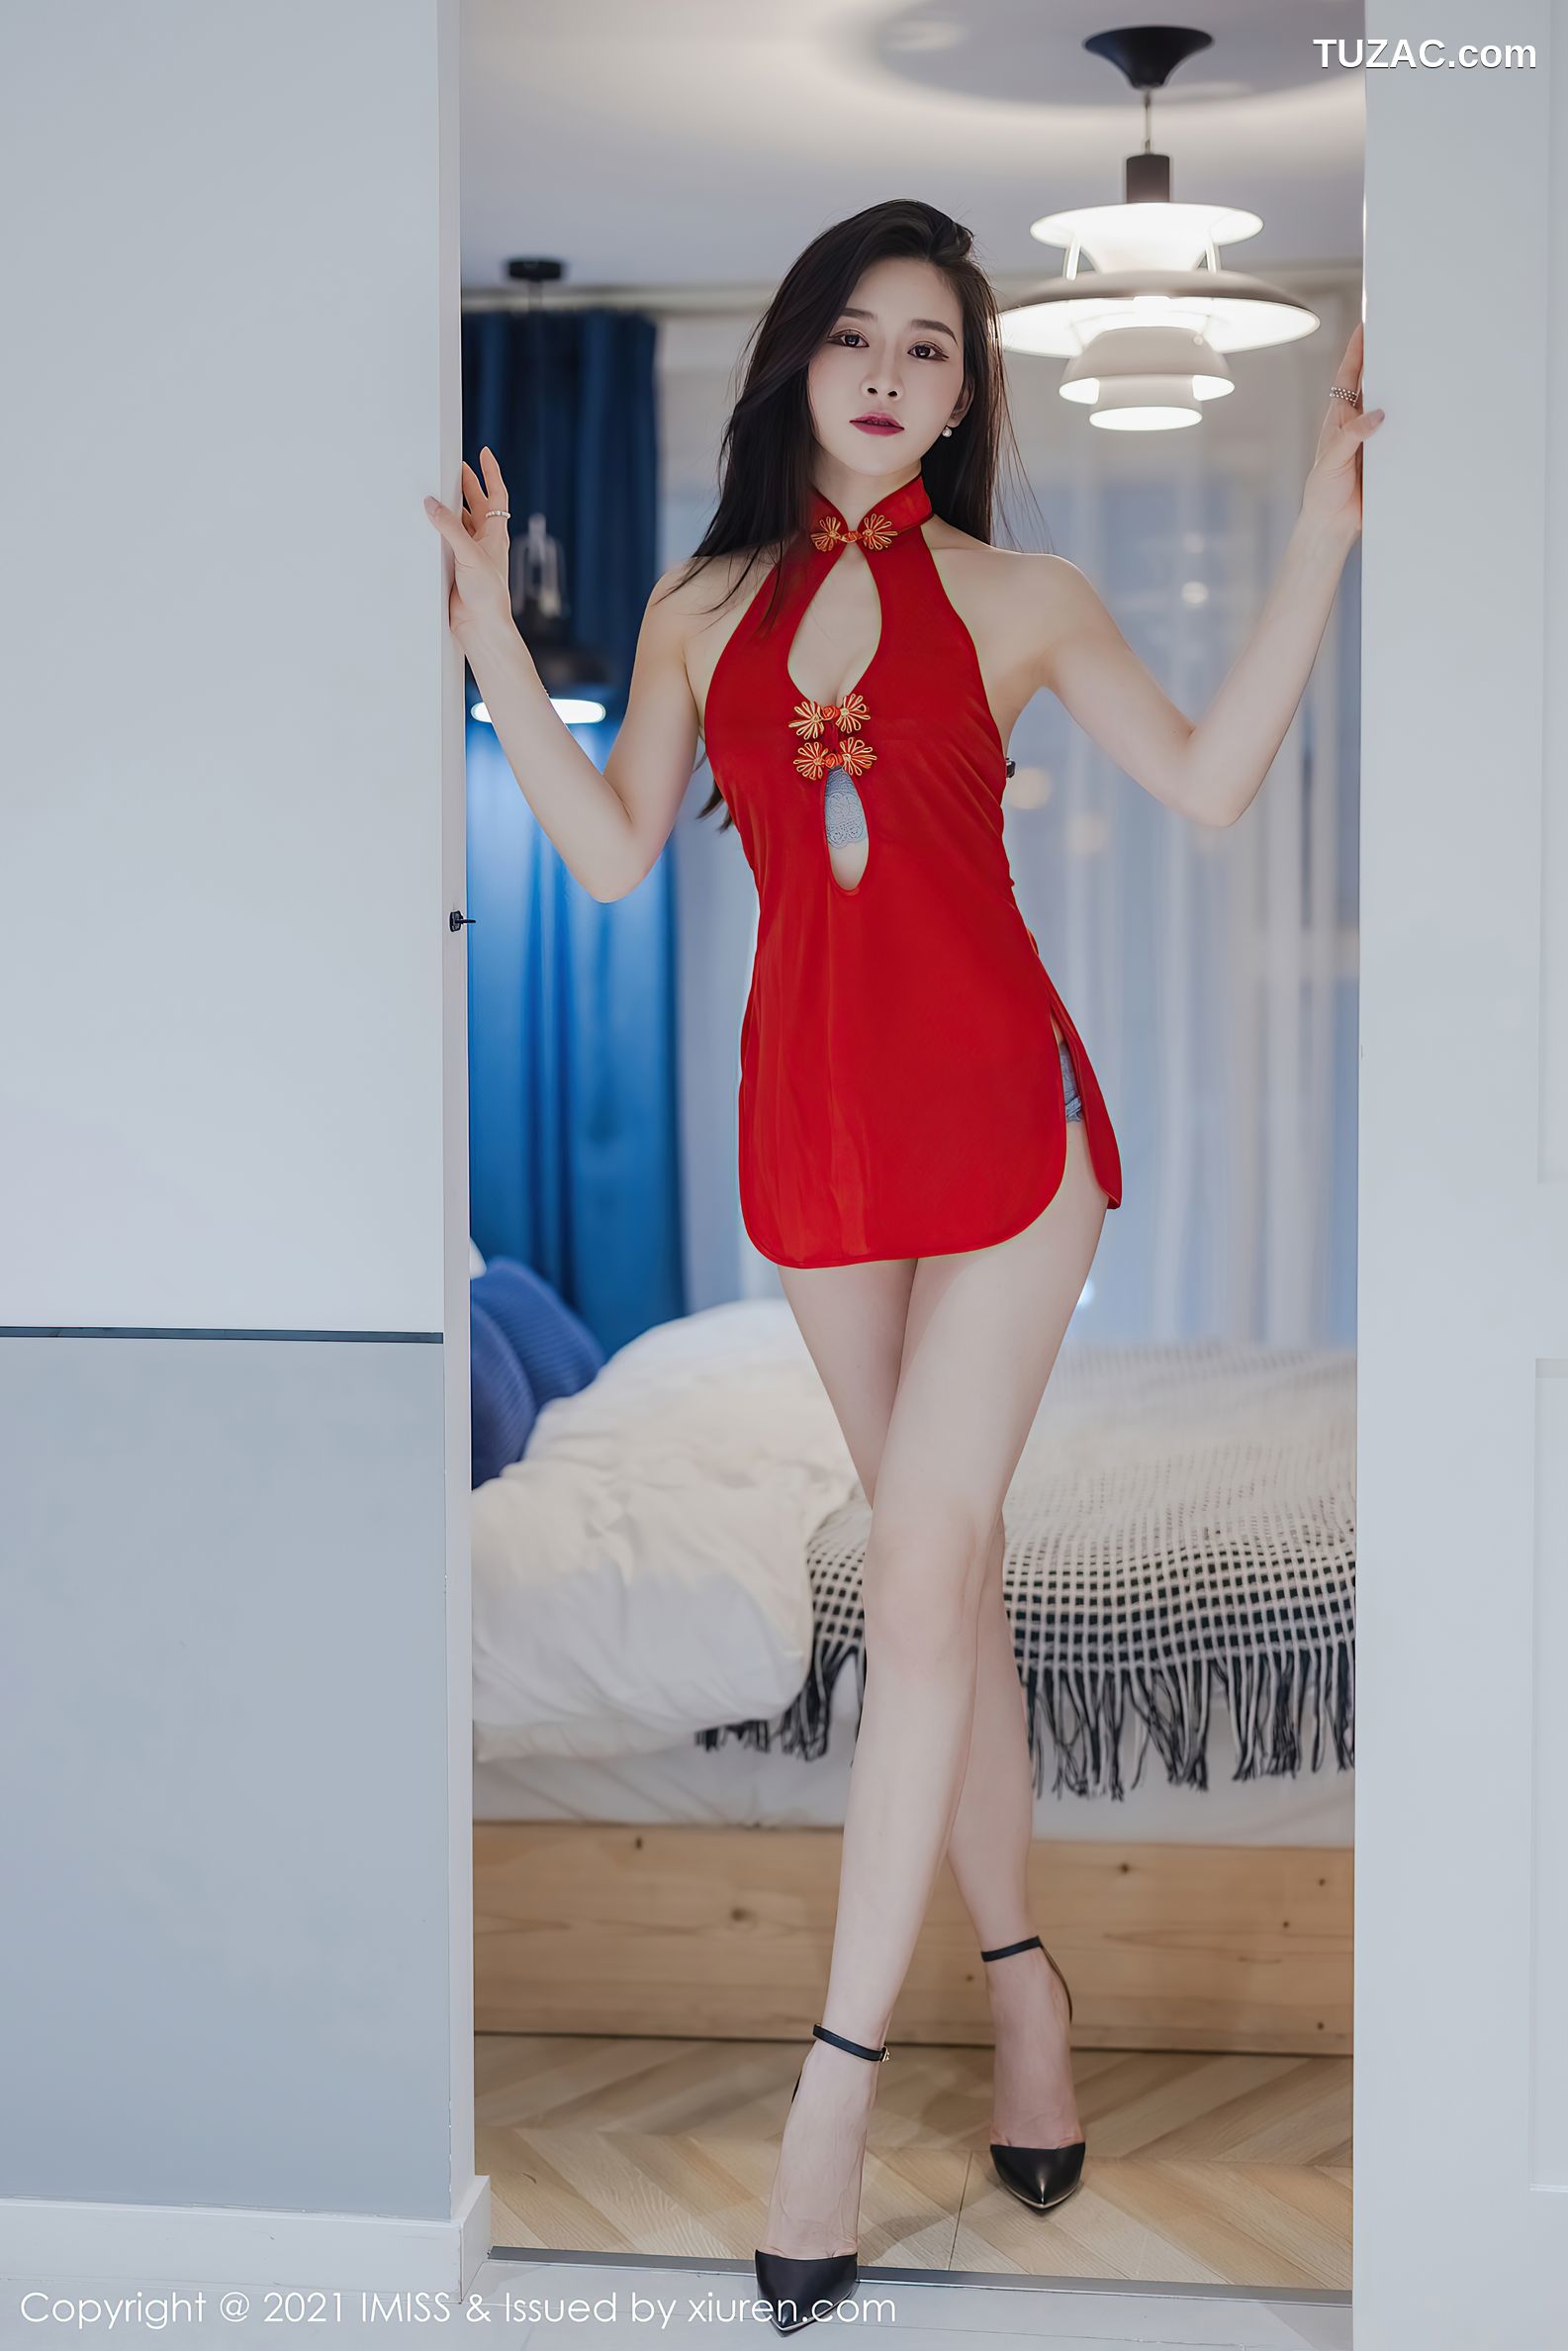 IMiss爱蜜社-572-Vanessa-古韵红色裙装浅灰蕾丝内衣-2021.04.07